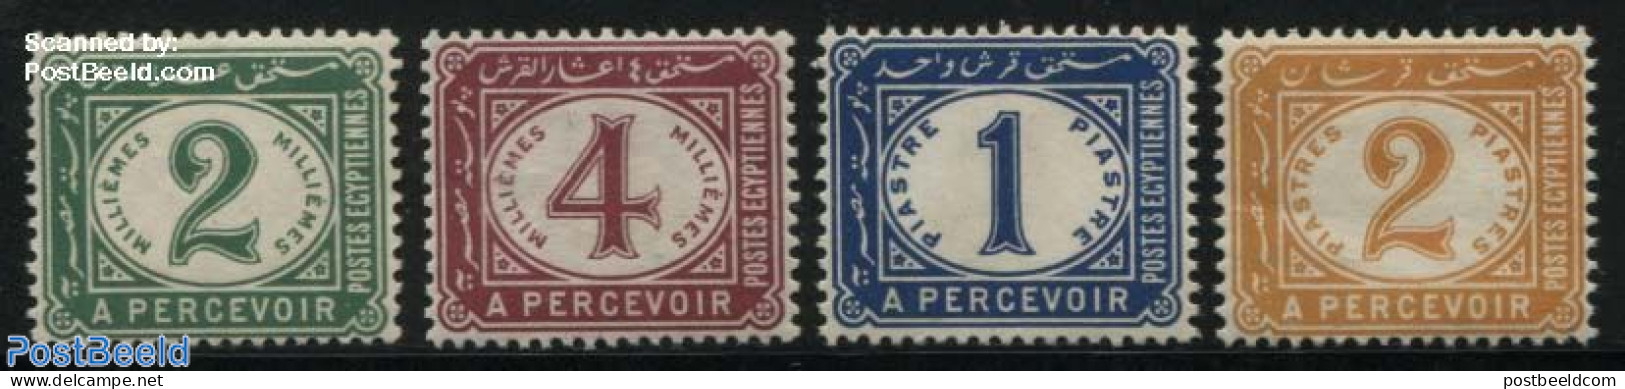 Egypt (Kingdom) 1889 Postage Due 4v, Unused (hinged) - Officials